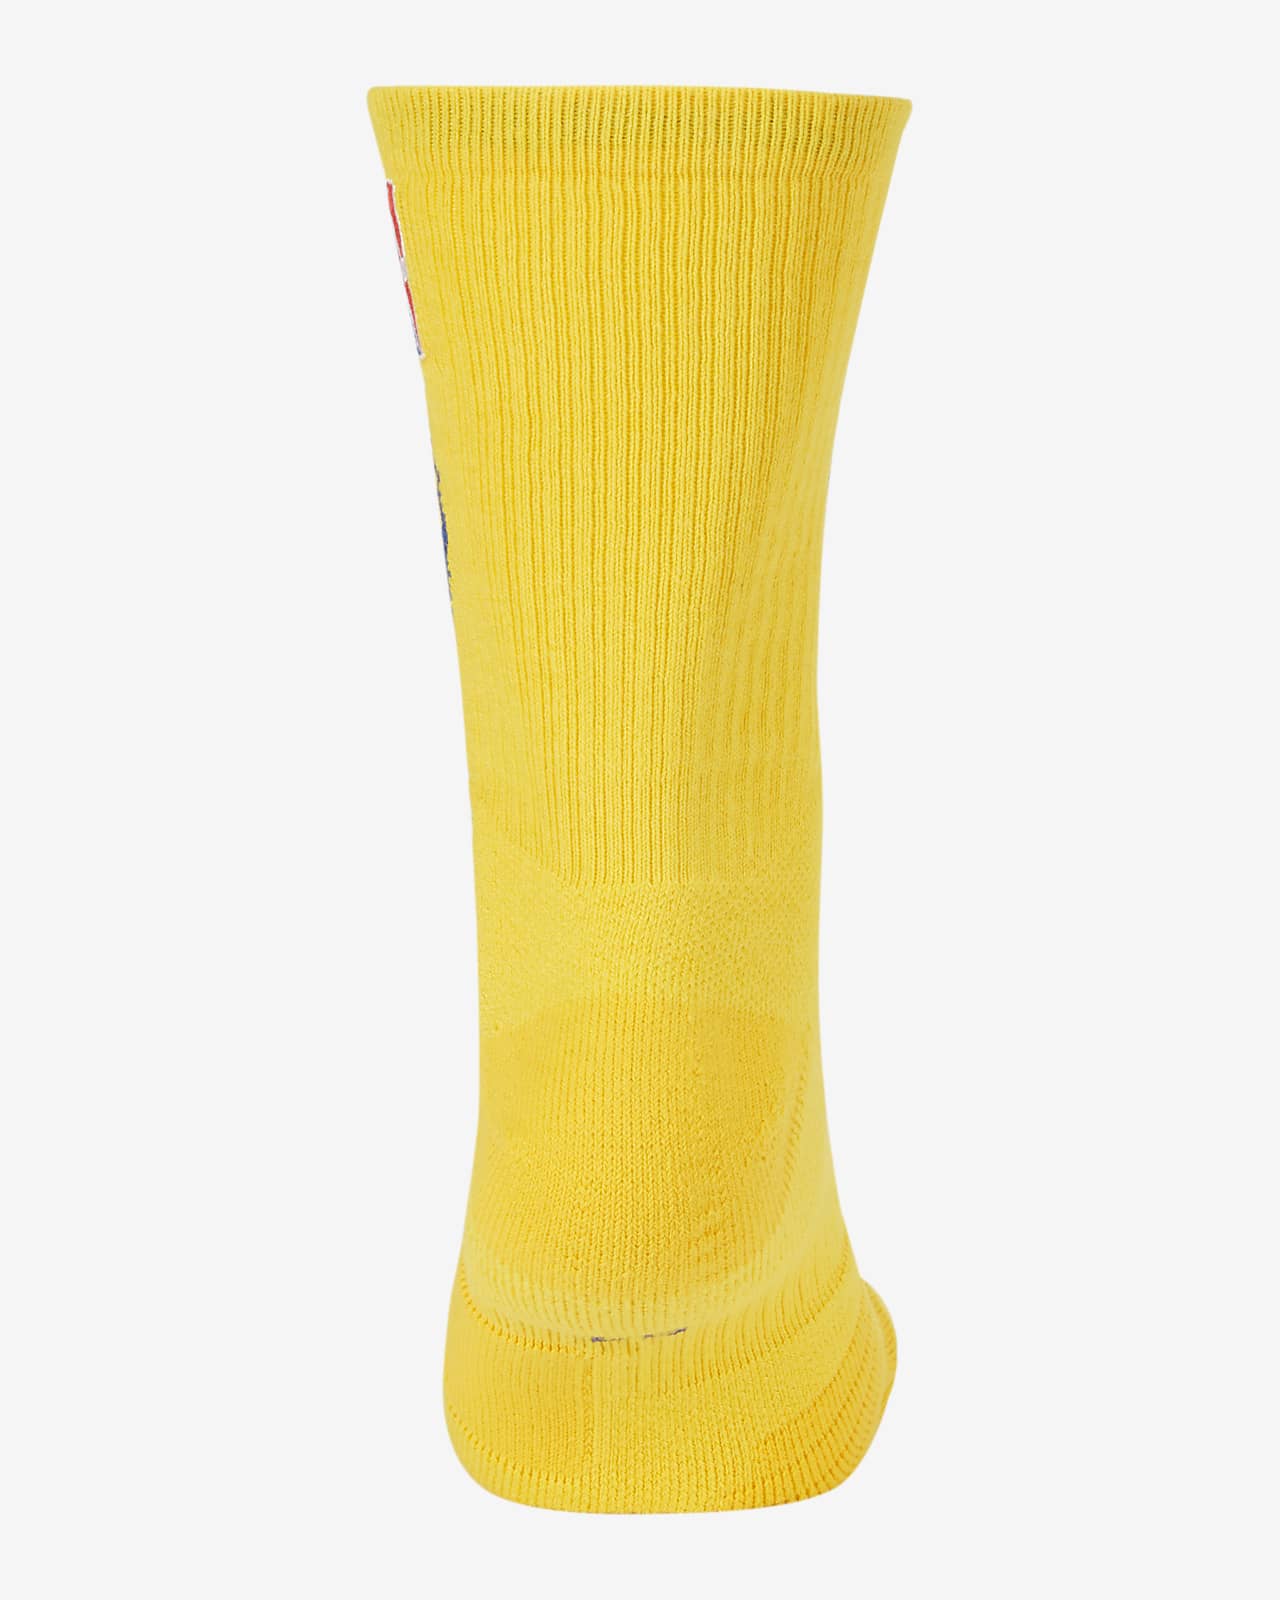 golden state warriors nike socks